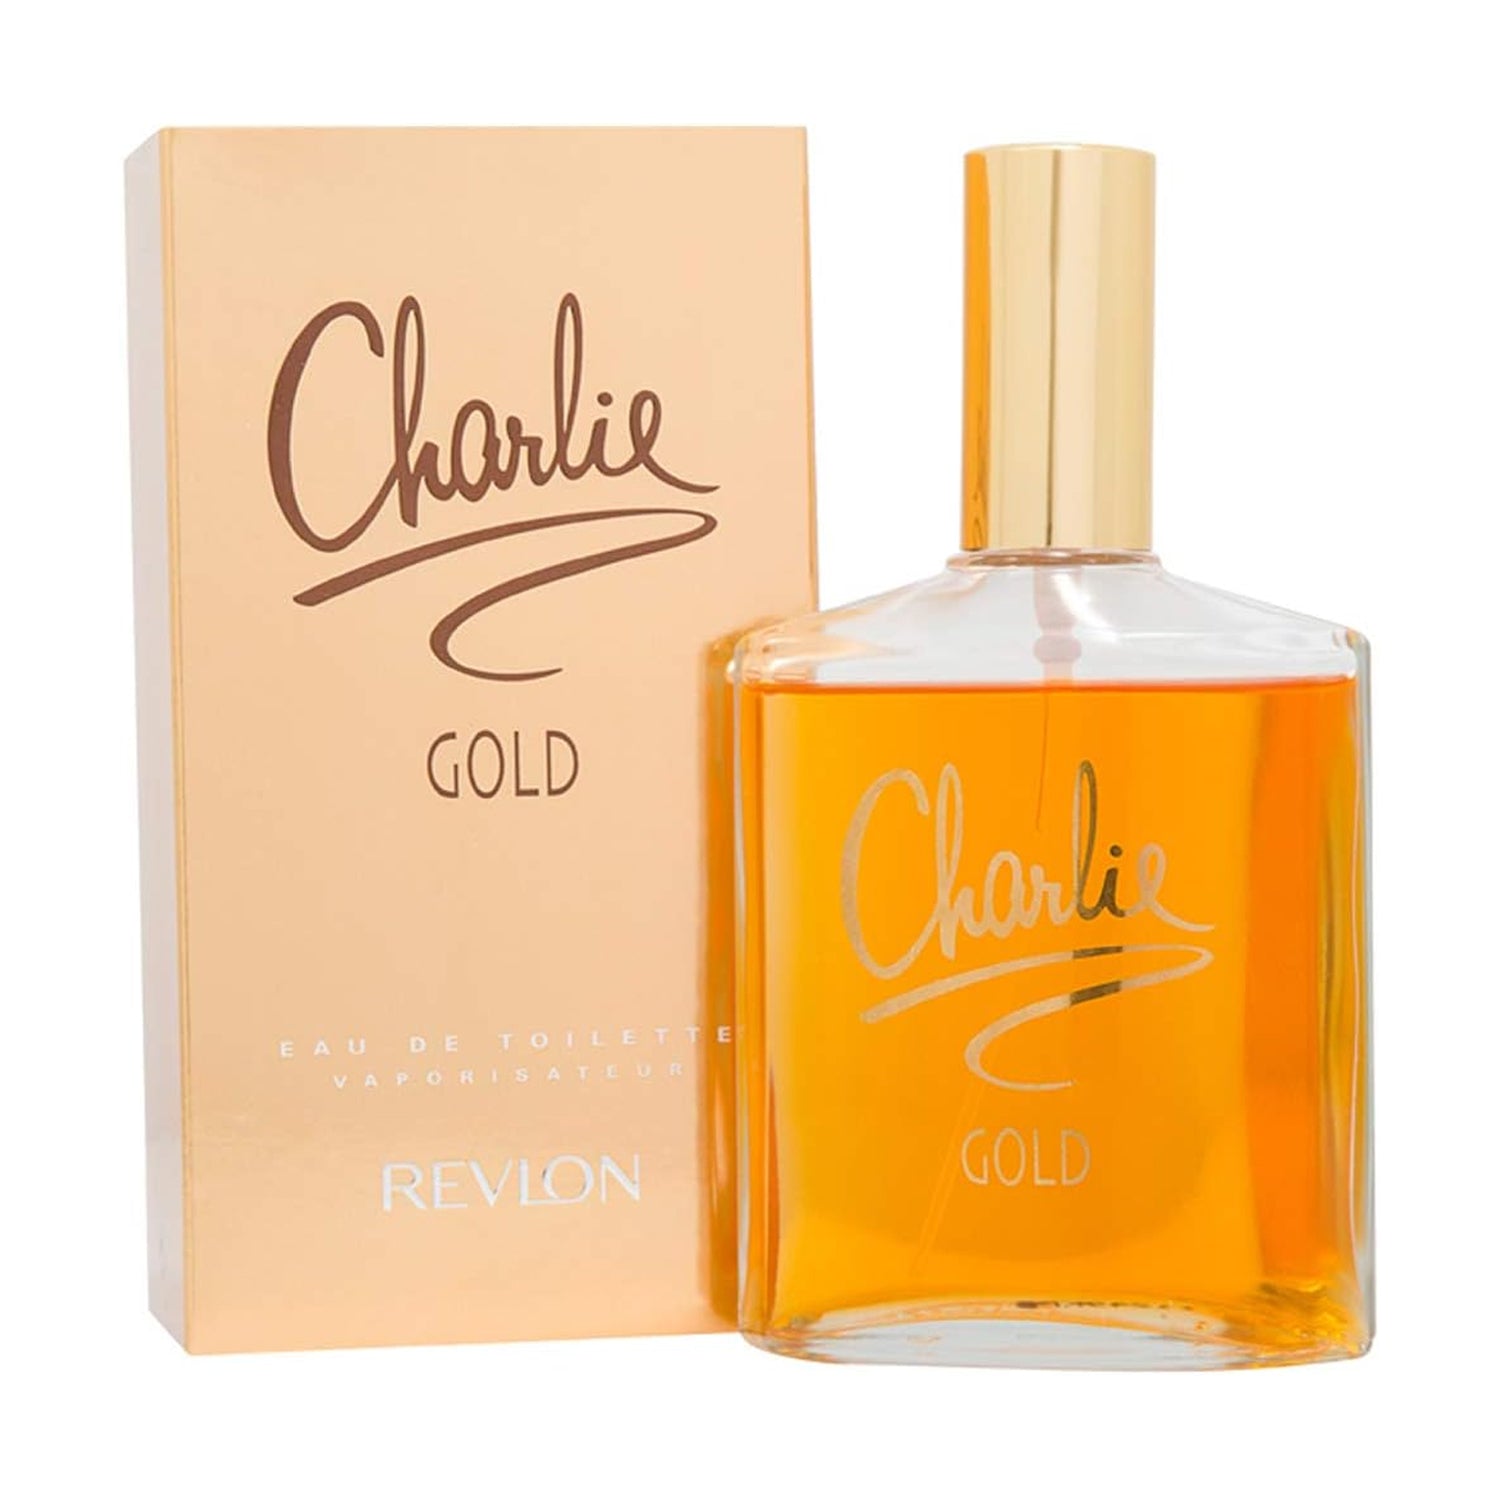 Revlon Charlie Gold 3.4 Oz Eau De toilette Spray for Women